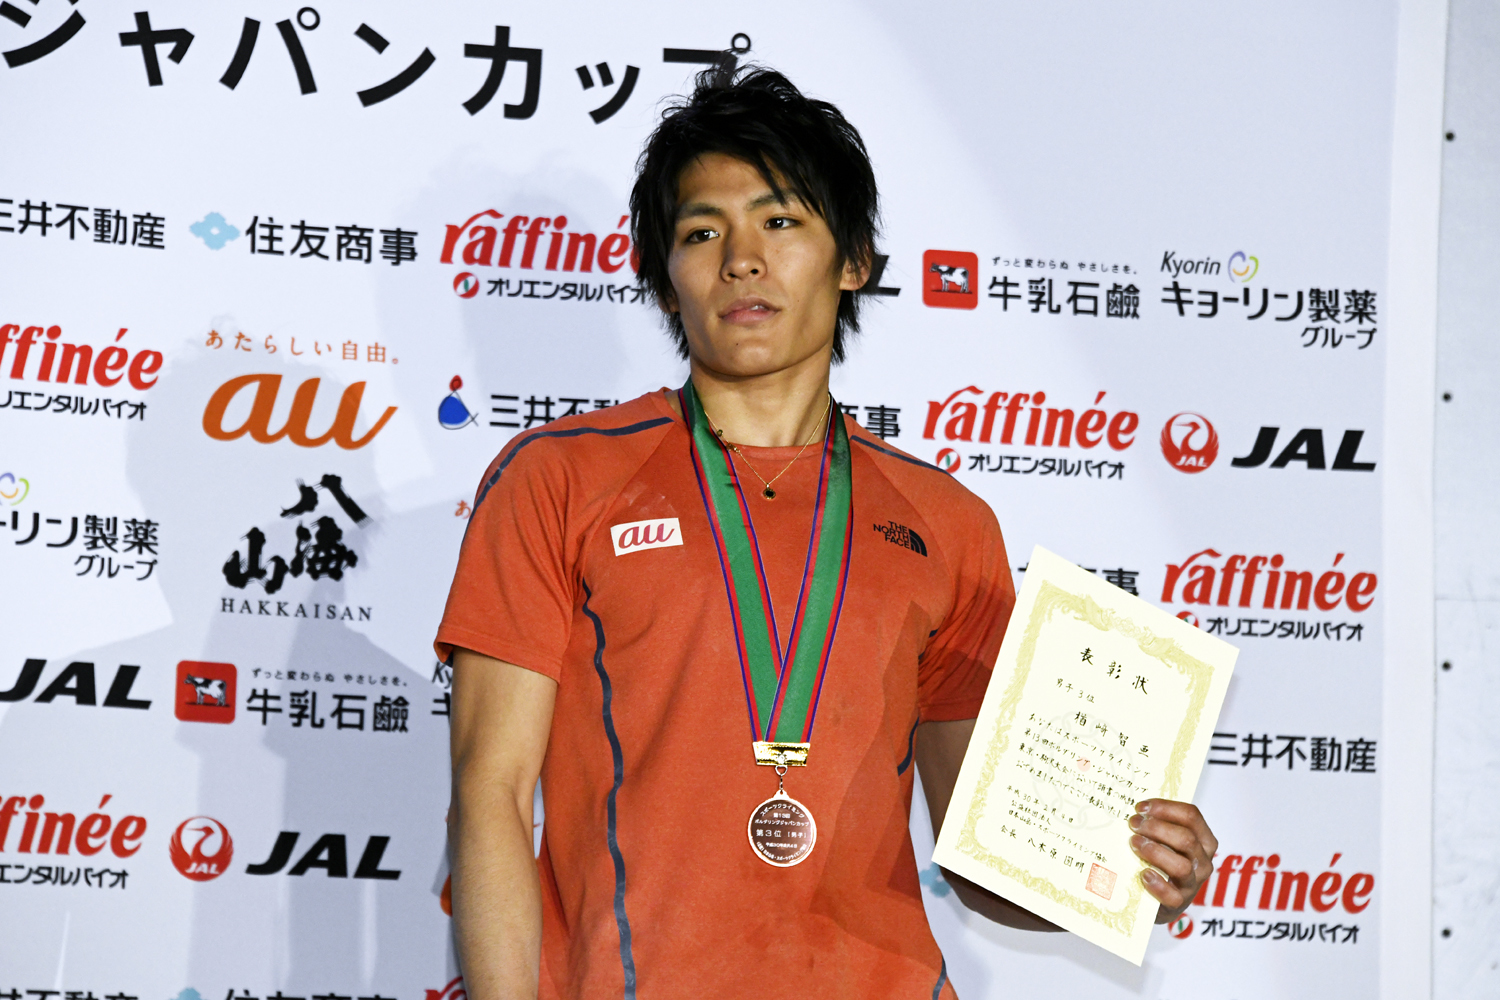 優勝を狙った楢崎智亜は3位。「残念」と話したが表彰台にのぼり、ホッとした表情だった